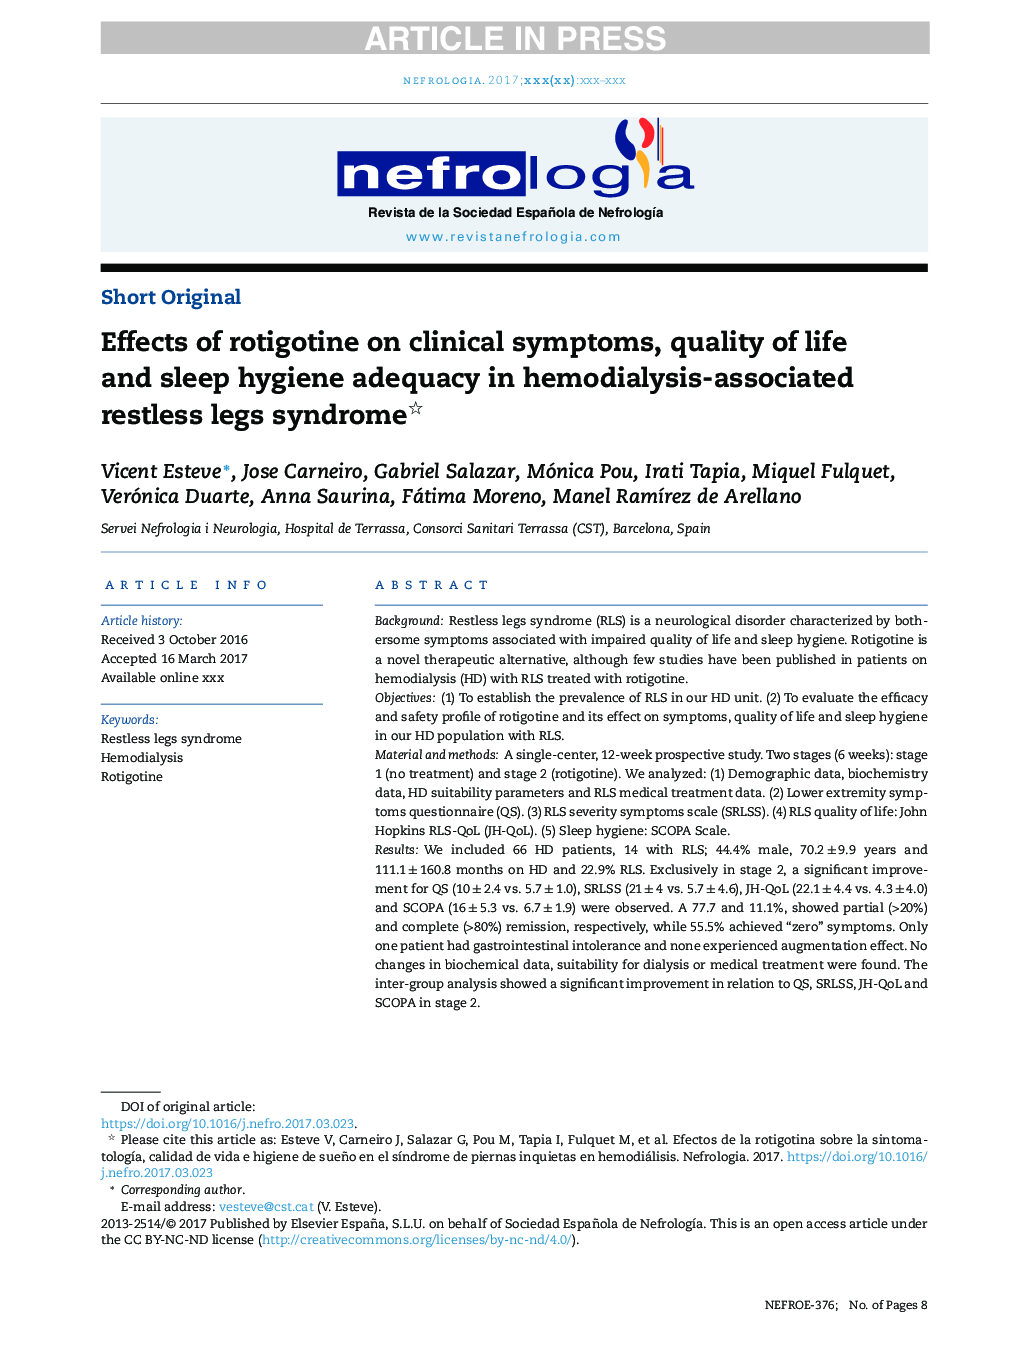 اثرات روتیگوتین بر علائم بالینی، کیفیت زندگی و کفایت بهداشت خواب در سندرم پاهای بیقراری مرتبط با همودیالیز 